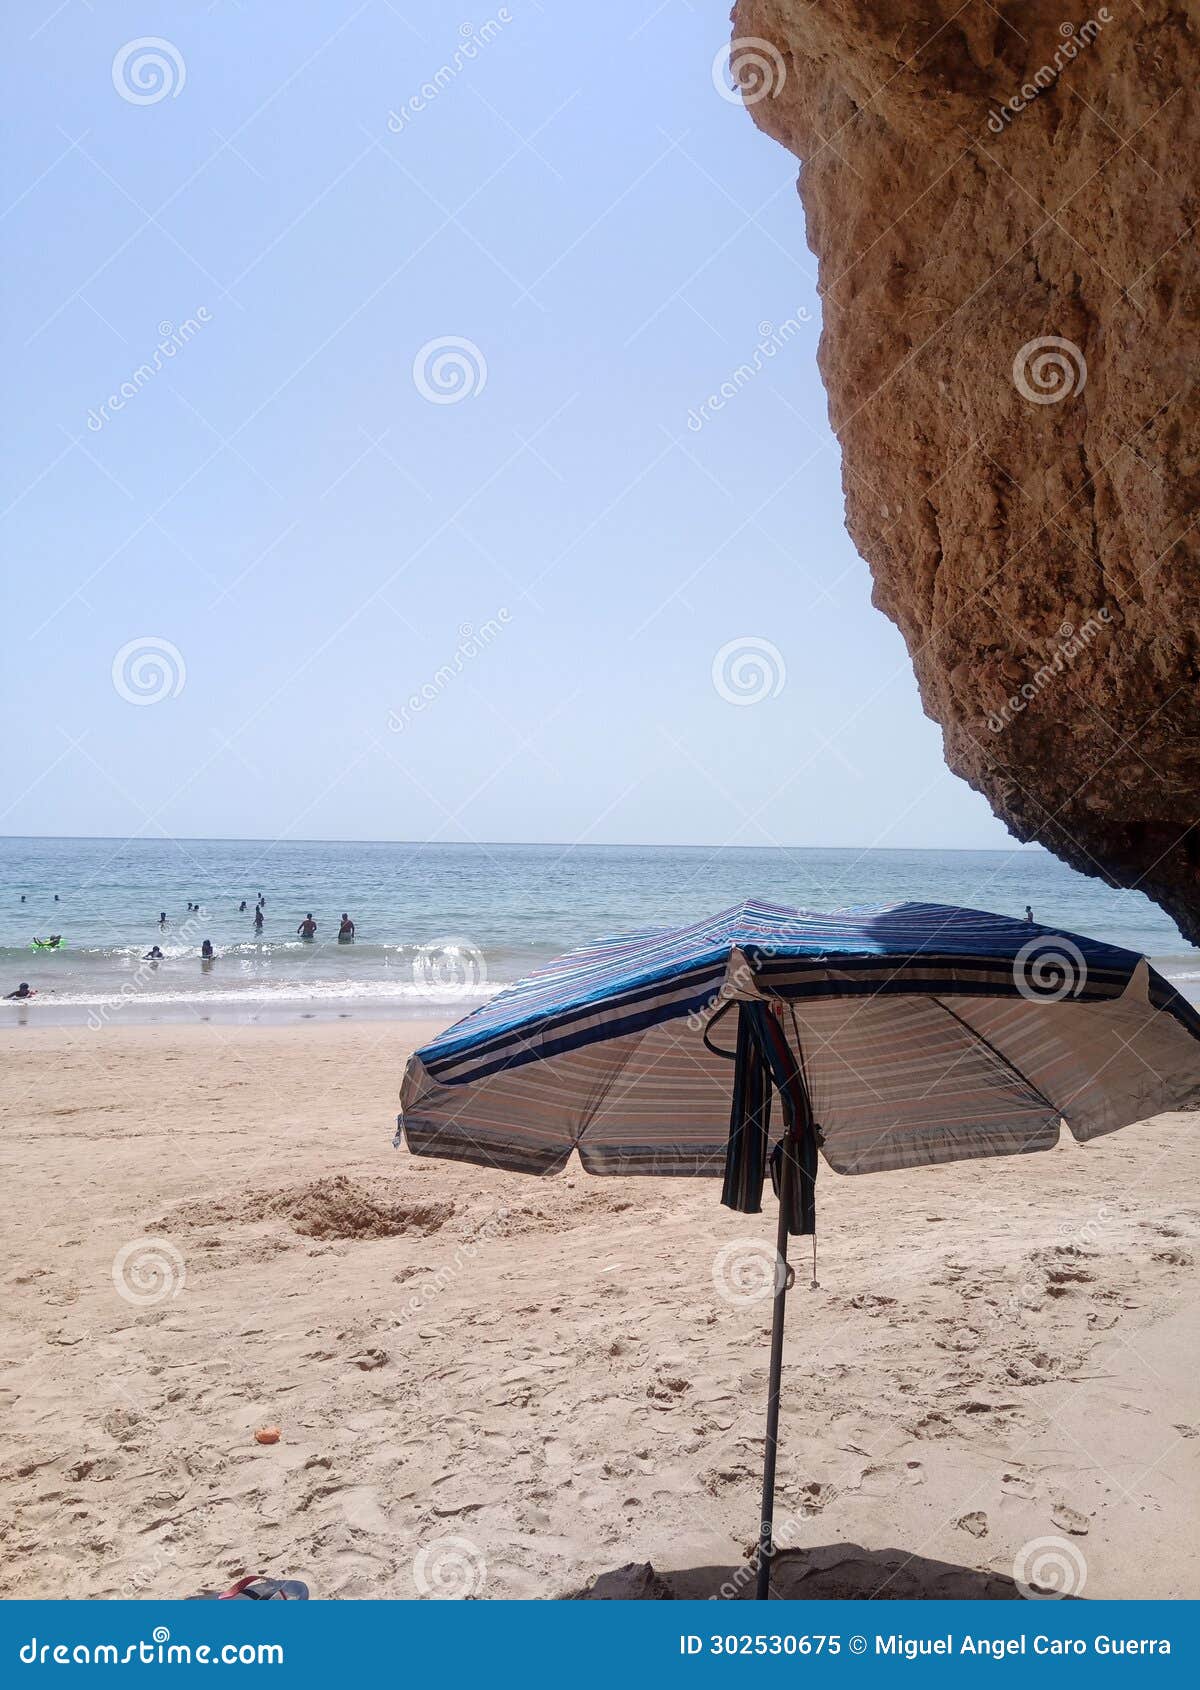 beach umbrella in portugal.